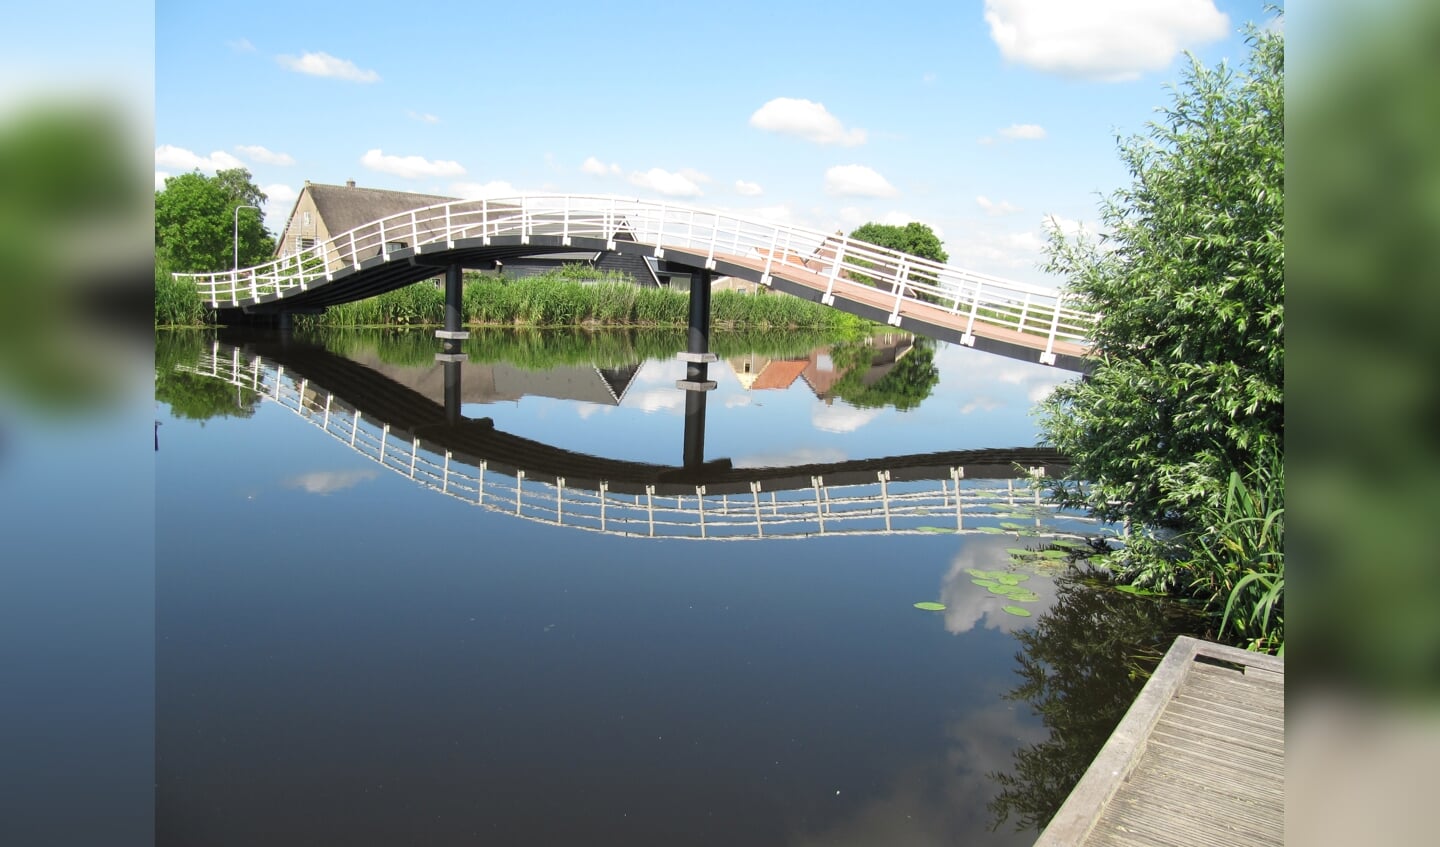 'Deze foto is gemaakt tijdens een fietstocht op 14 juni in de Alblasserwaard. De stilte van het water waarin de brug haarscherp te zien is.'